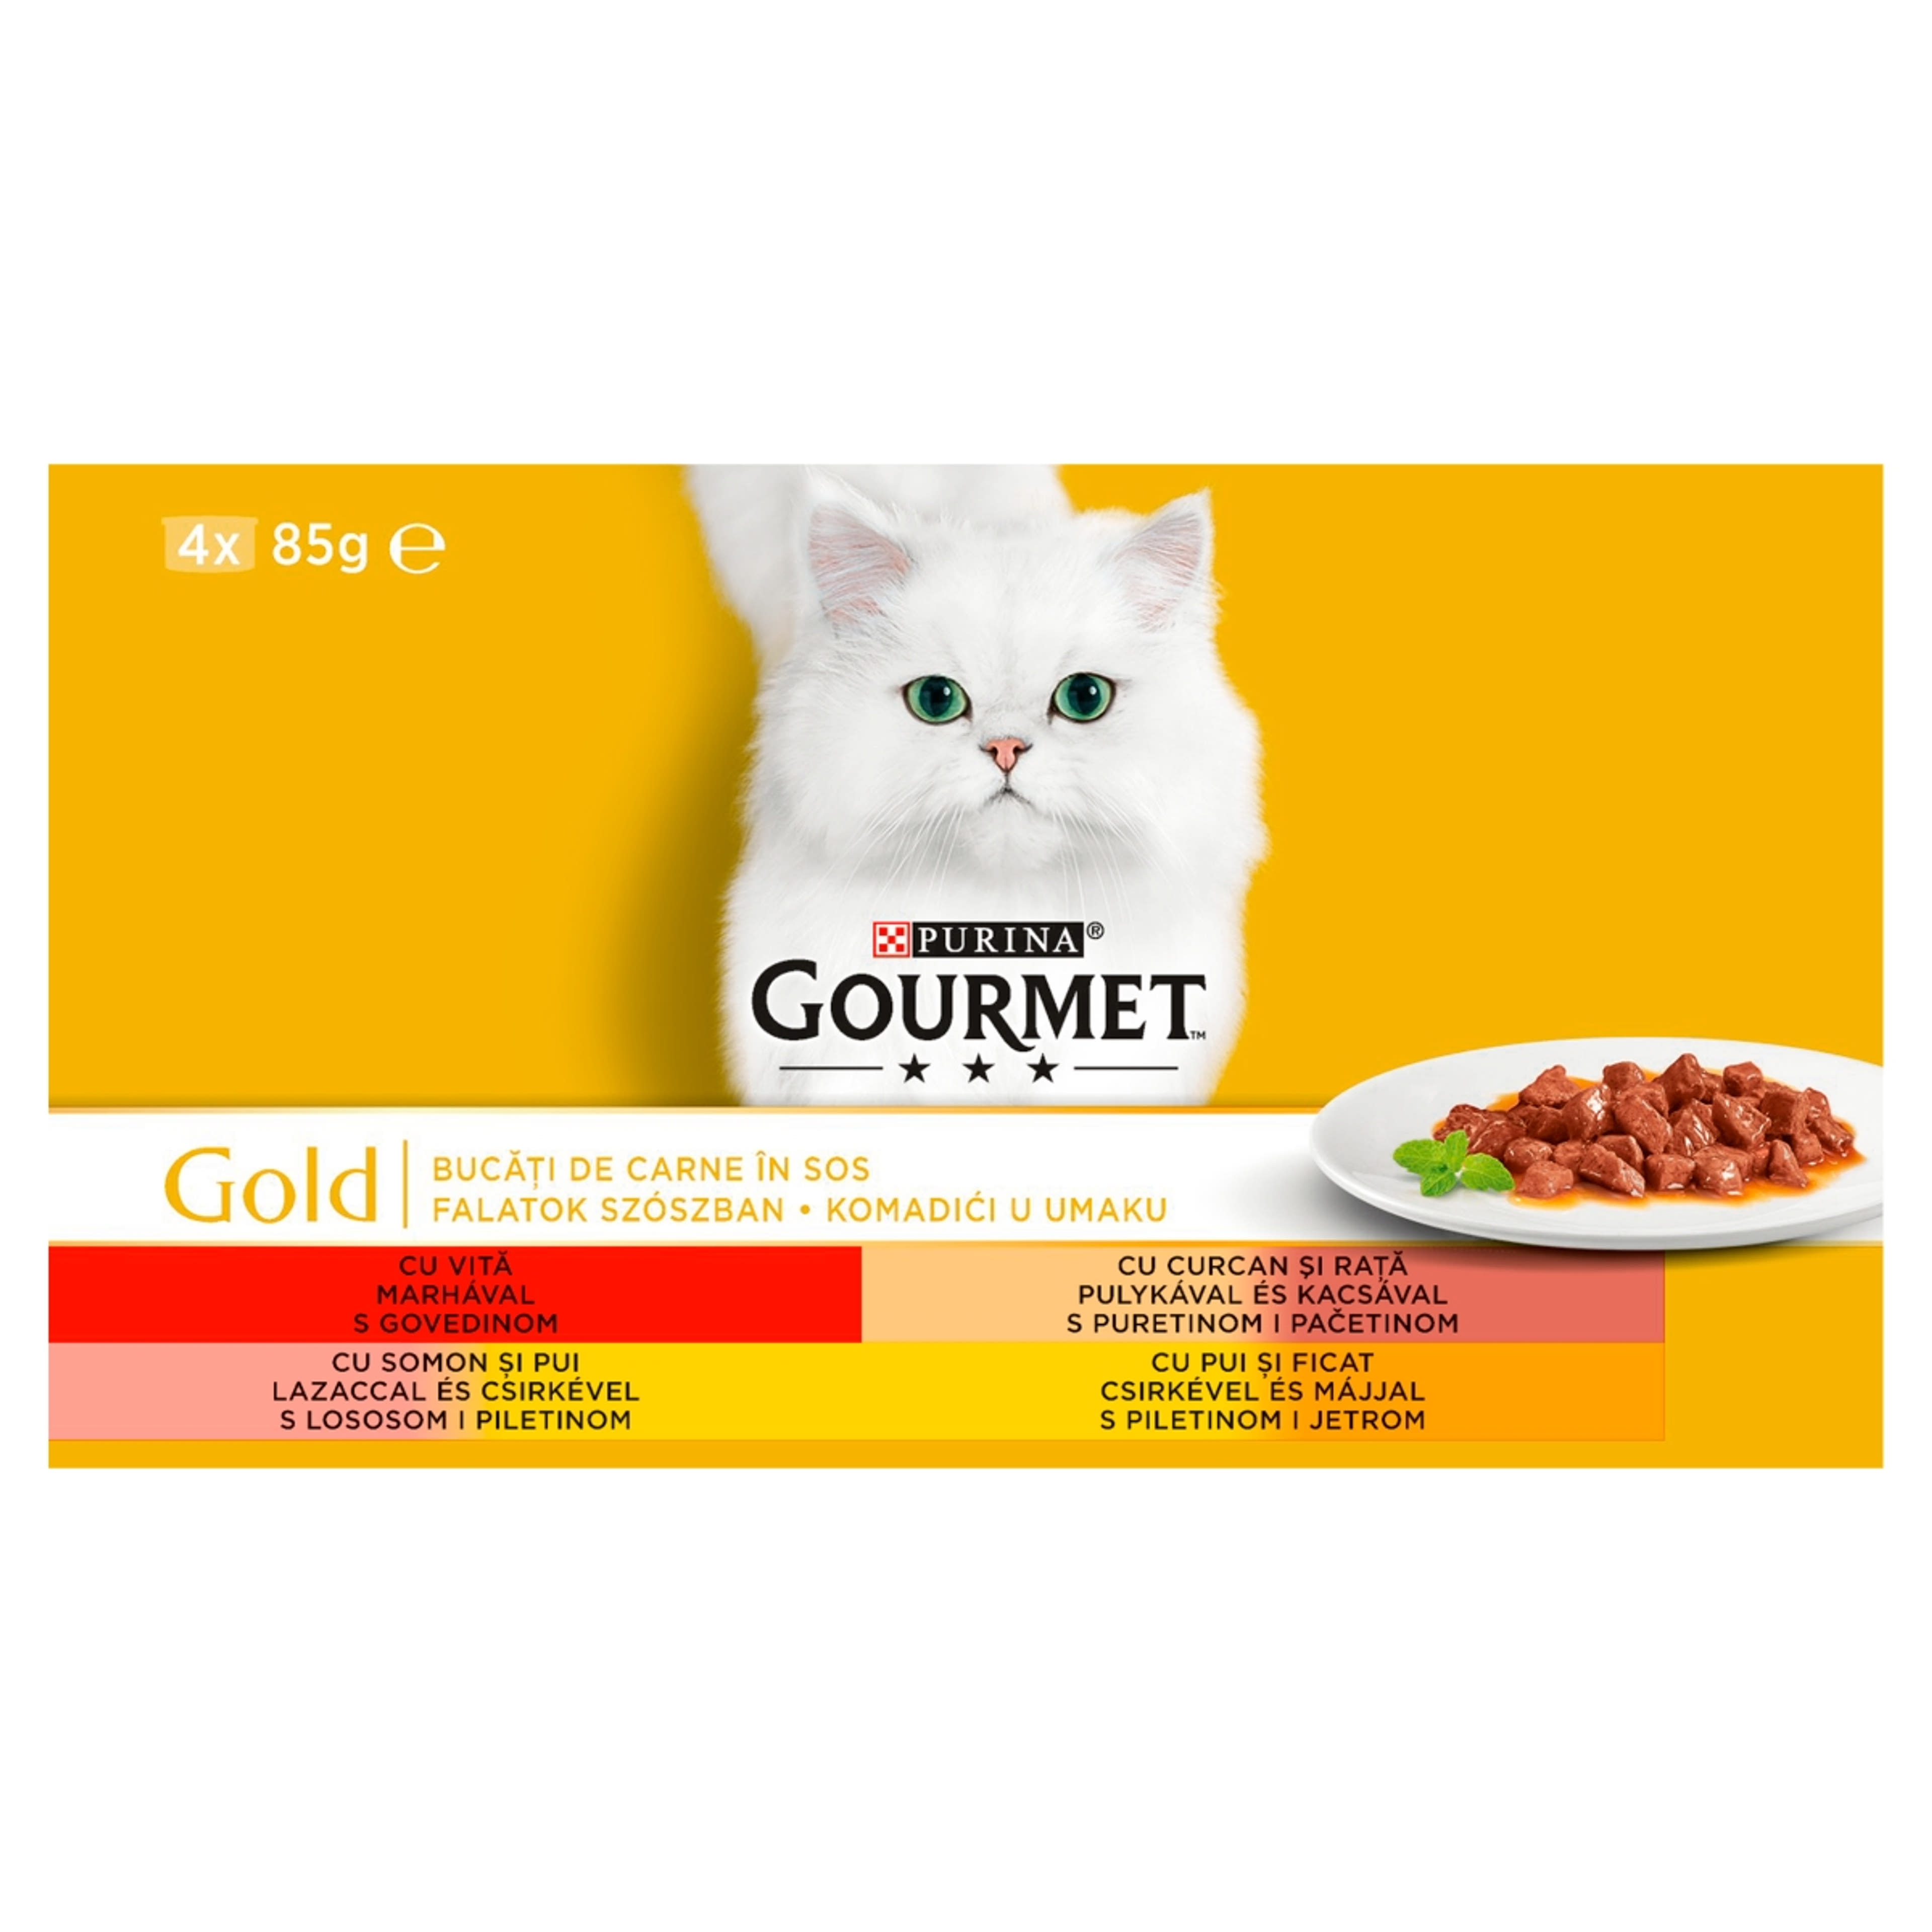 Gourmet Gold felnőtt teljes értékű konzerv macskáknak, falatok szószban 4 ízben (4x85 g) - 340 g